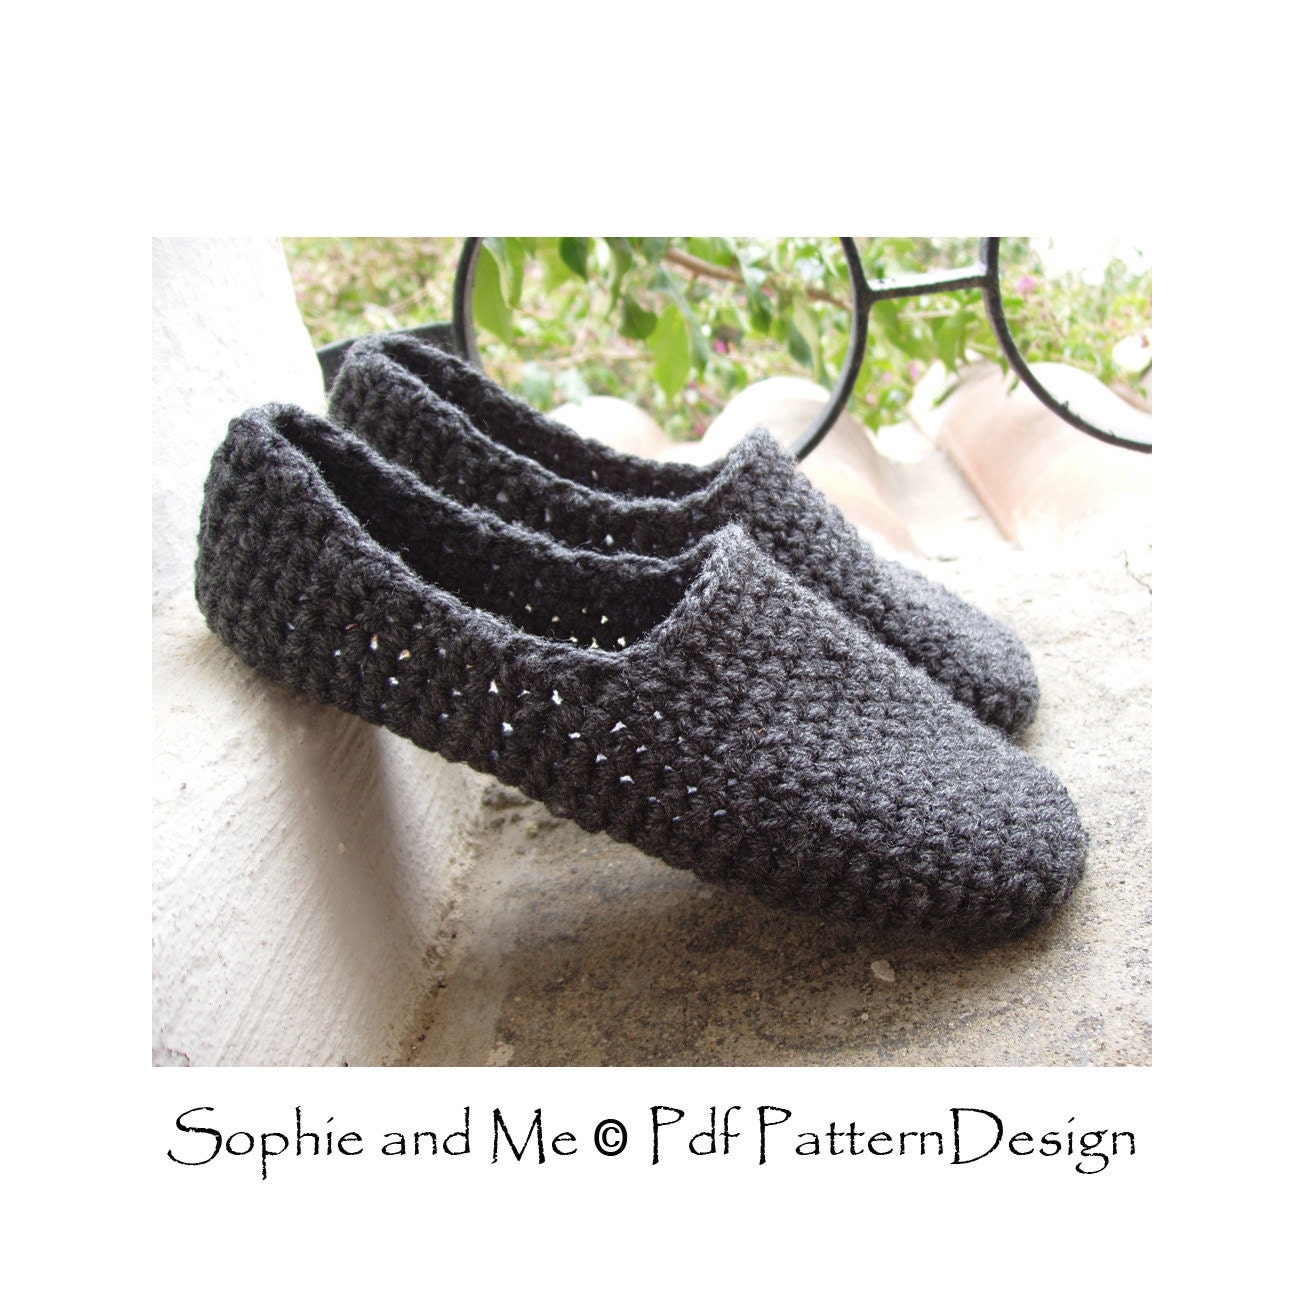 Plain Basic SC-Slippers Crochet Pattern Instant Download